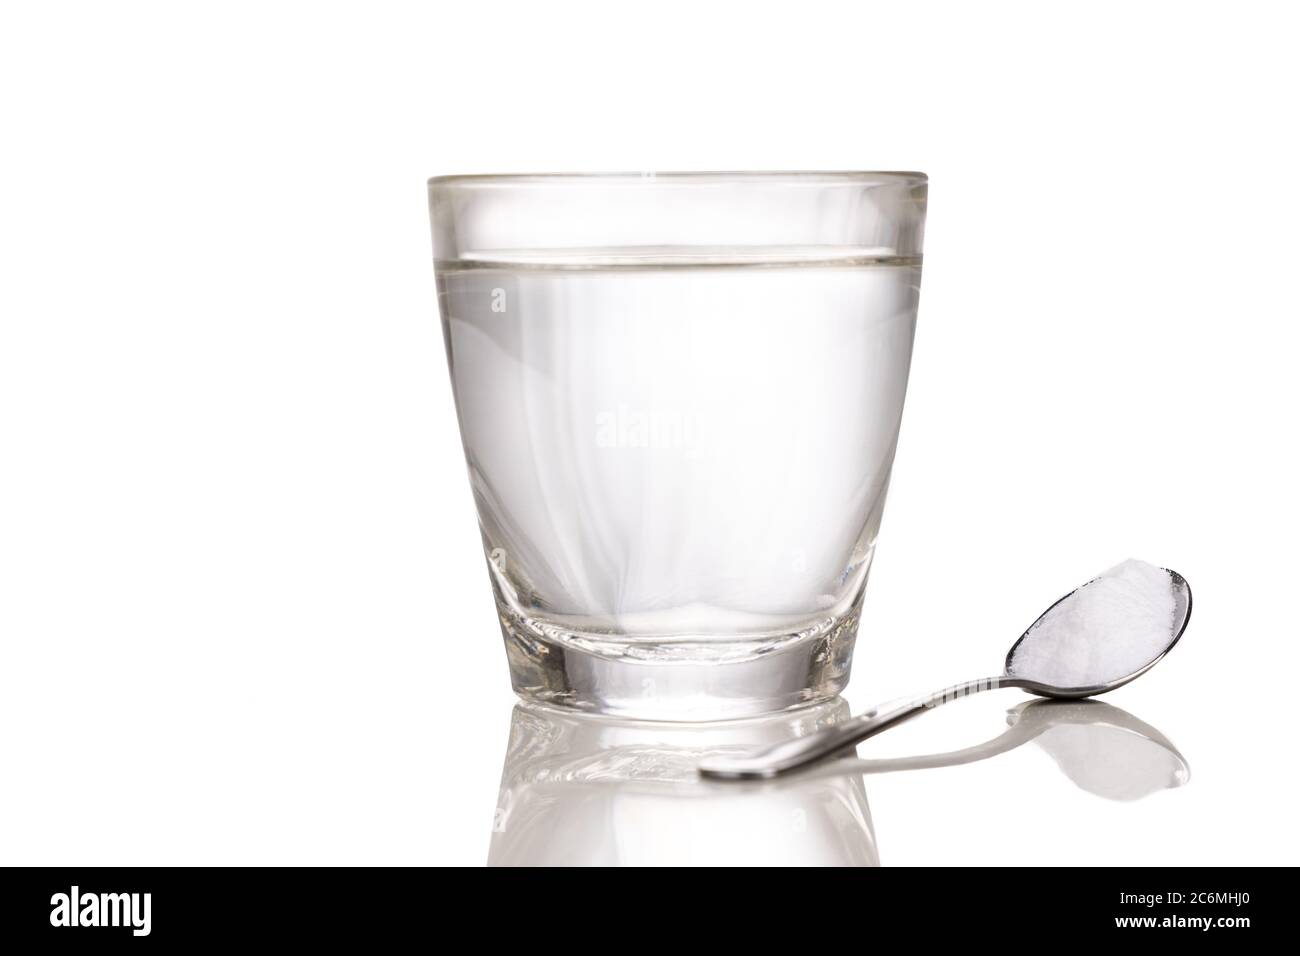 Sale di reidratazione orale o oralmente con un bicchiere d'acqua e un cucchiaio con fondo bianco Foto Stock